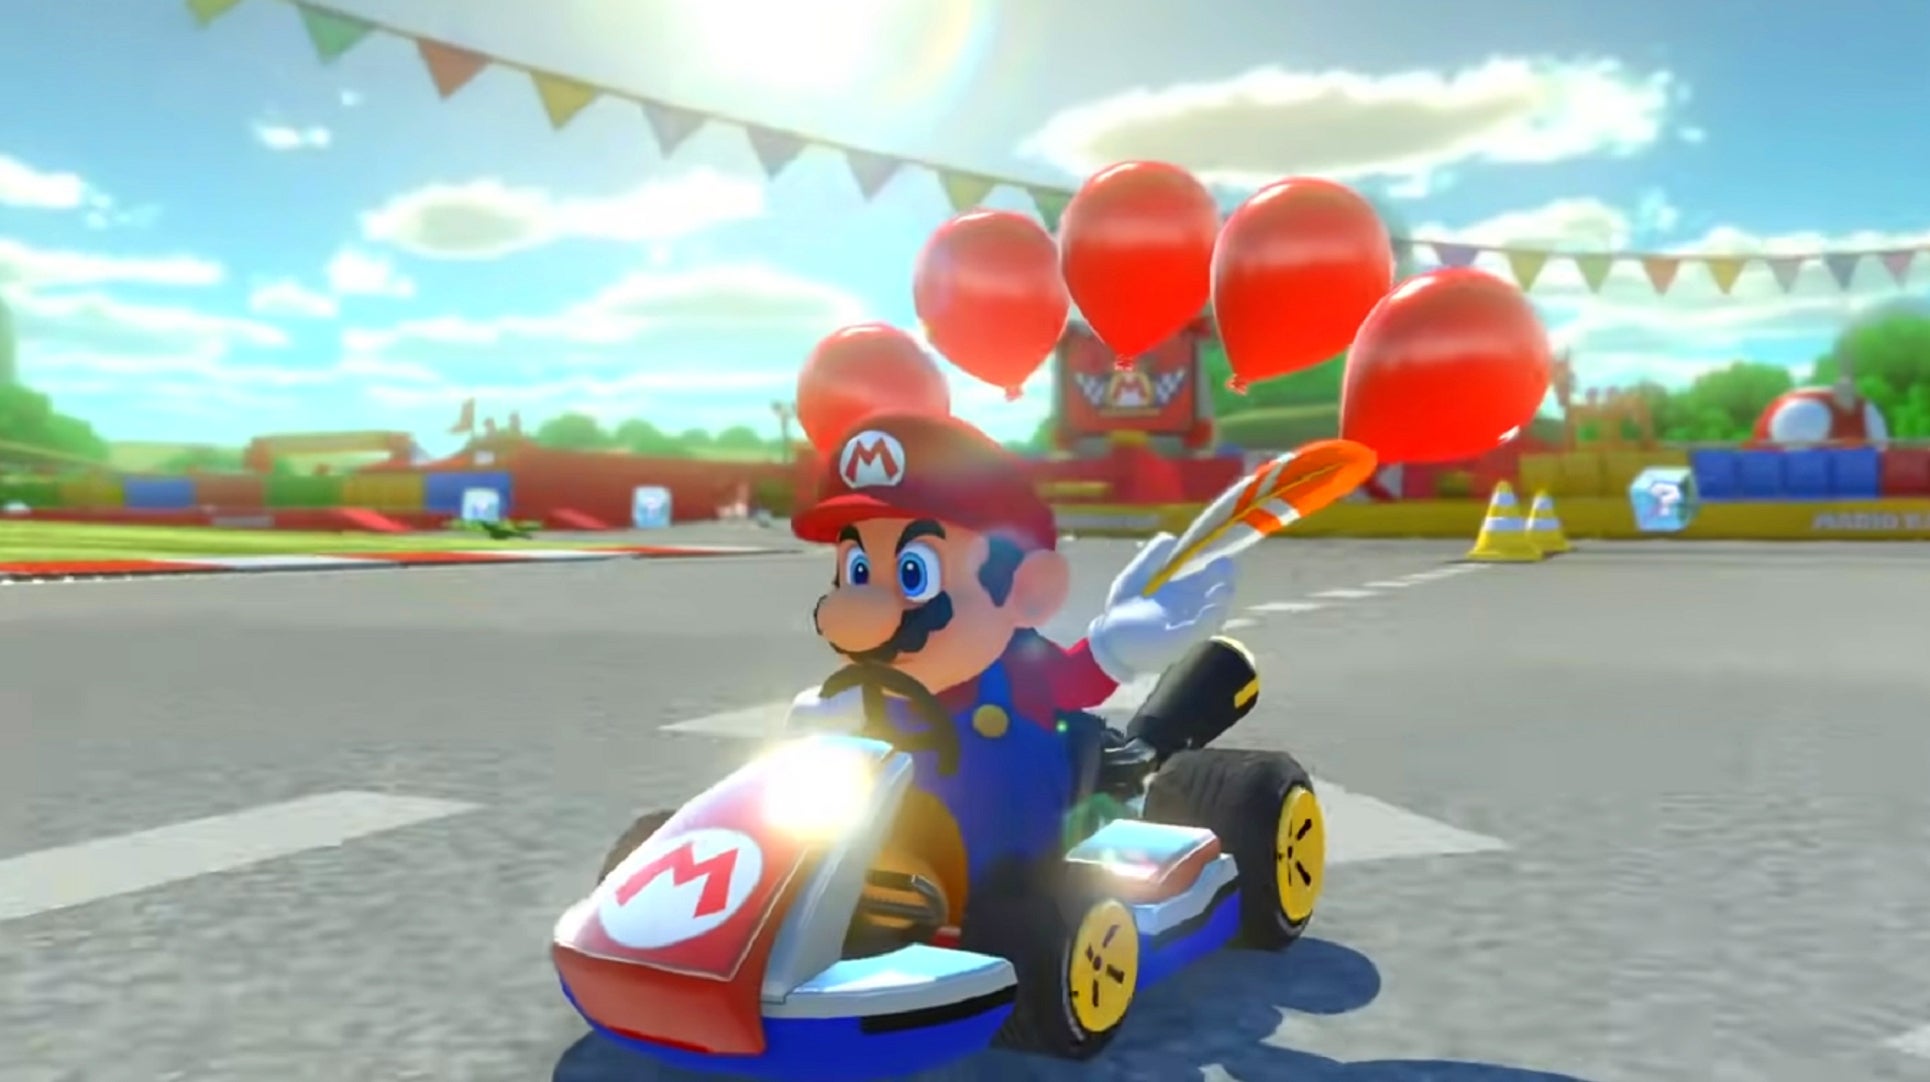 Bilder zu Gerücht: Mario Kart 9 sei in "aktiver Entwicklung", glaubt japanischer Branchenexperte